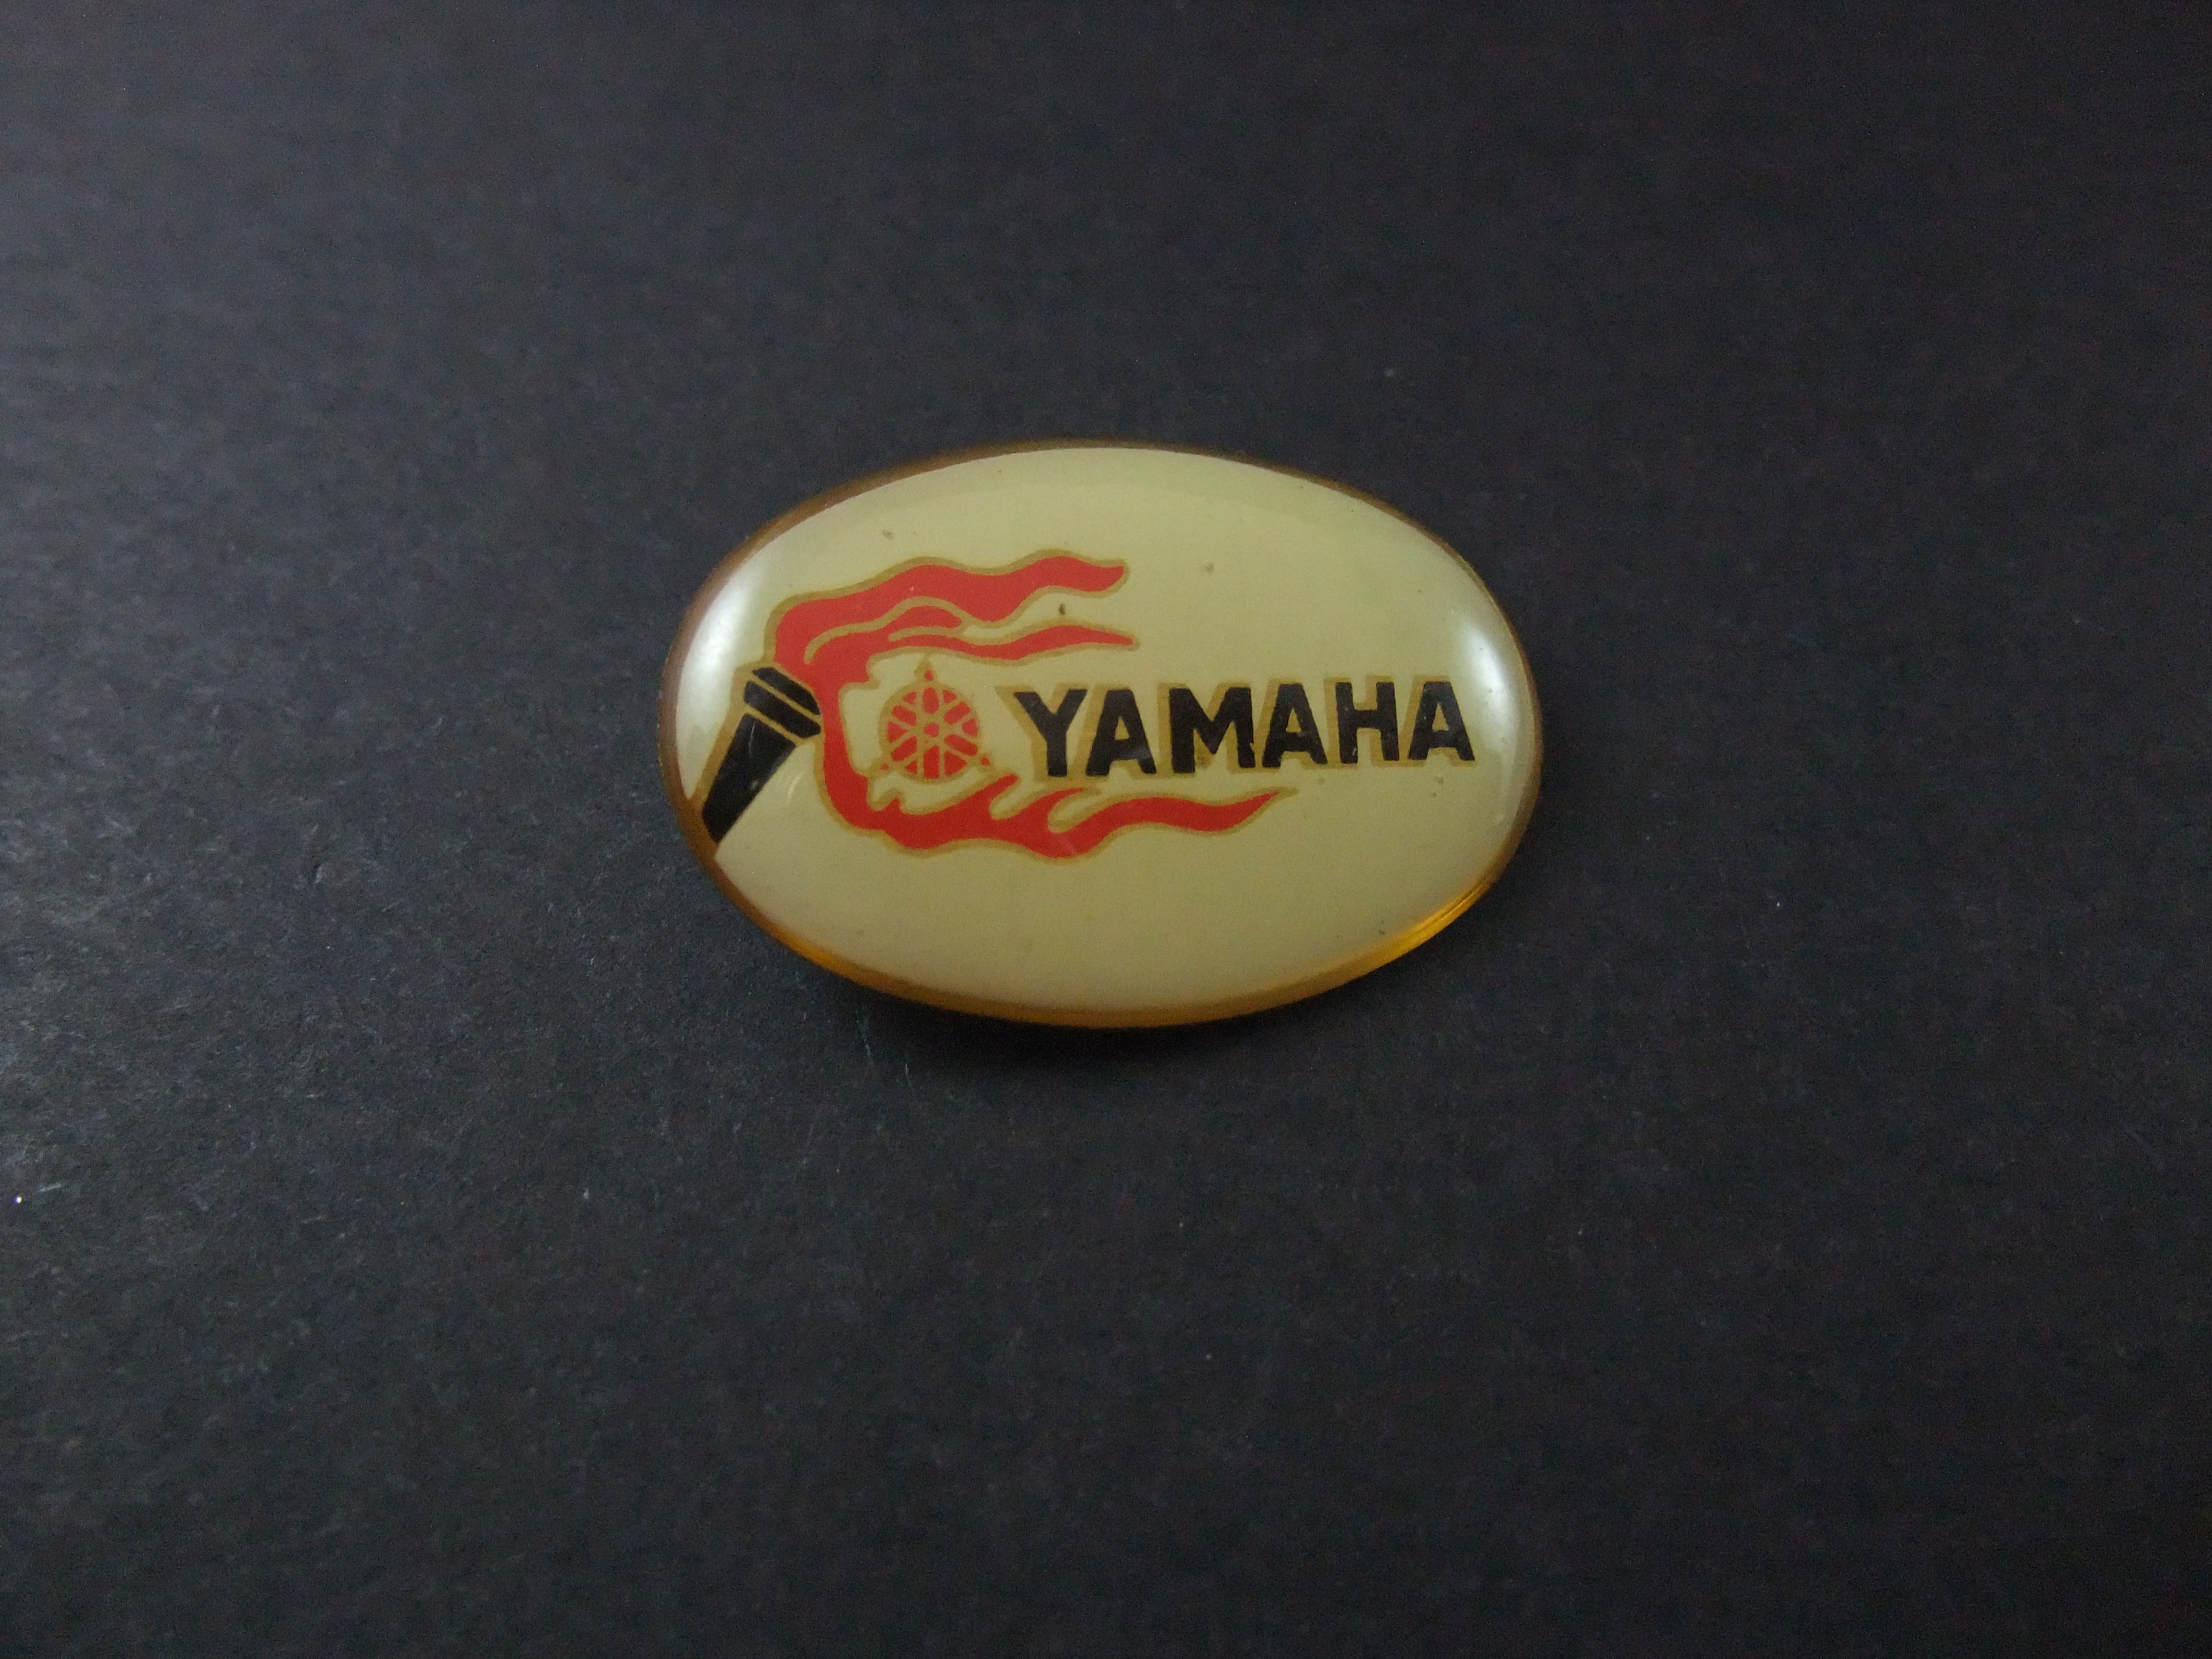 Yamaha motor fakkel met logo